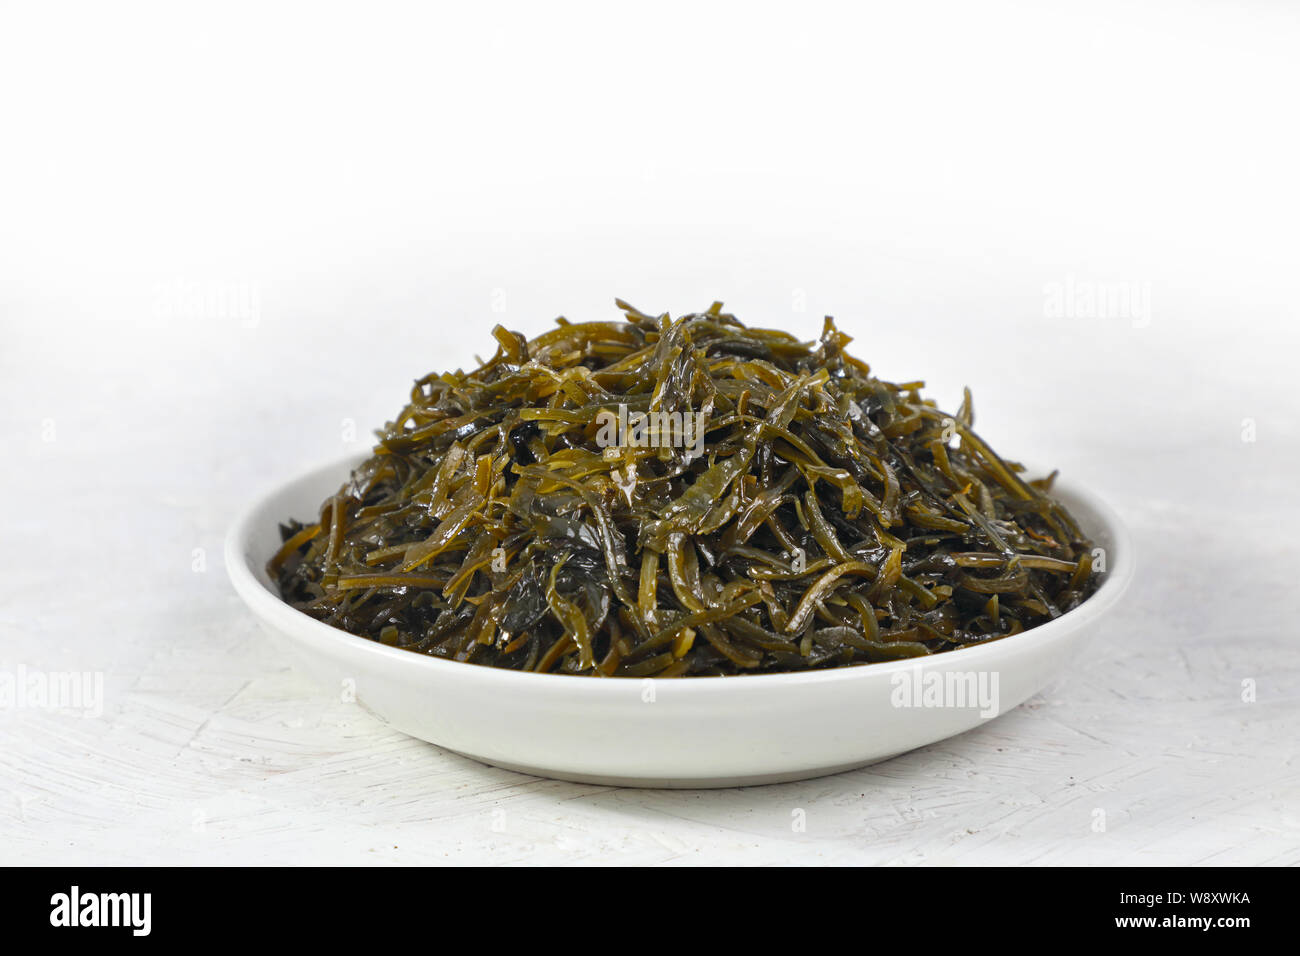 Insalata di alghe è un prodotto alimentare ricco di iodio. su sfondo bianco. Foto Stock